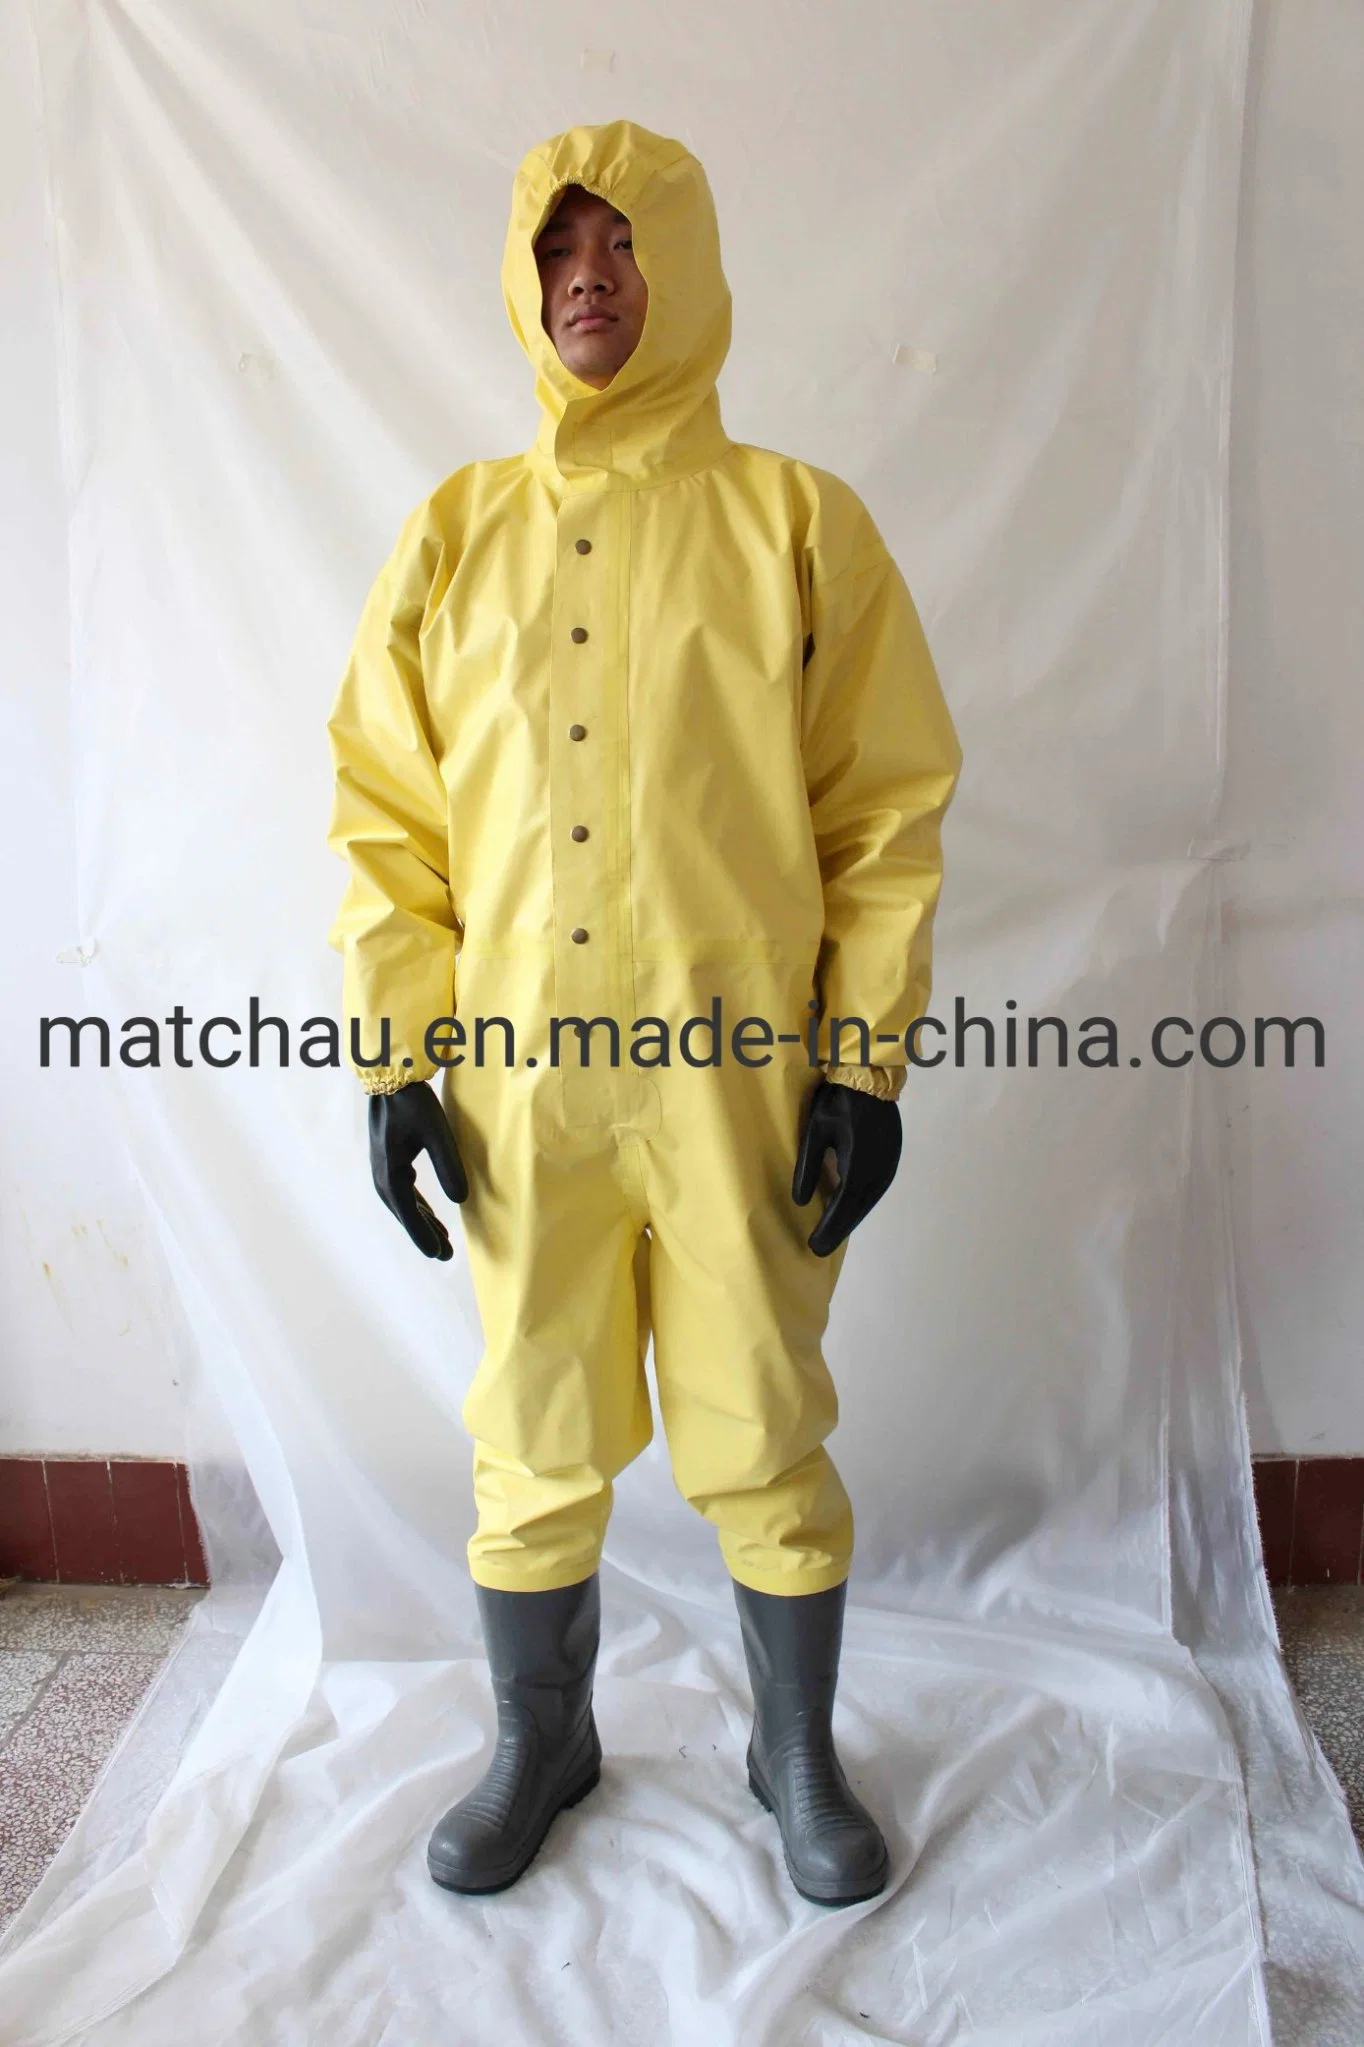 Personal Matchau traje de protección química